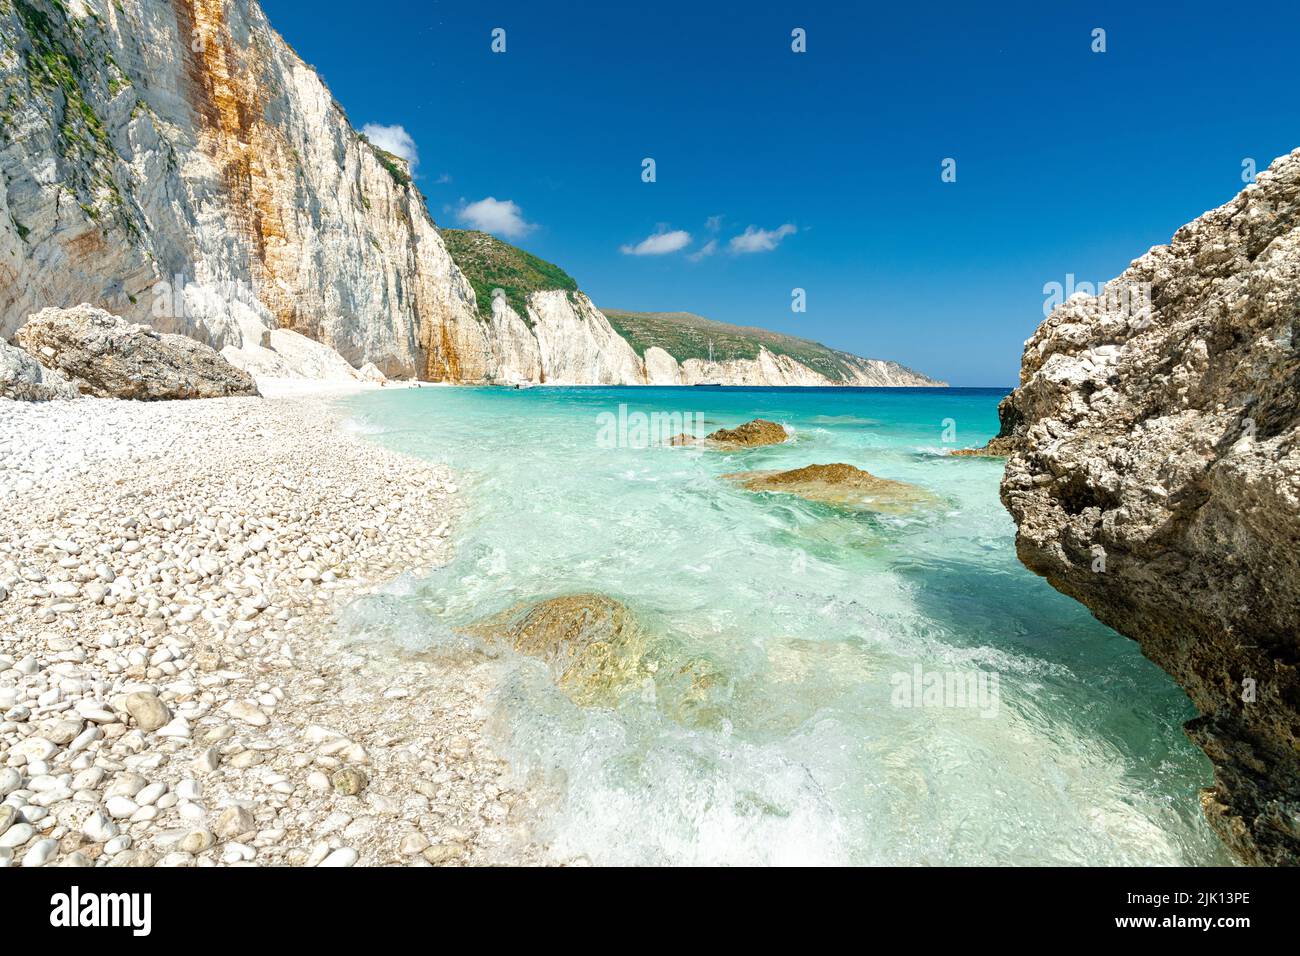 Die Wellen des türkisfarbenen, klaren Meeres waschen die weißen Steine des Fteri-Strandes, Kefalonia, der Ionischen Inseln, der griechischen Inseln, Griechenlands, Europa Stockfoto